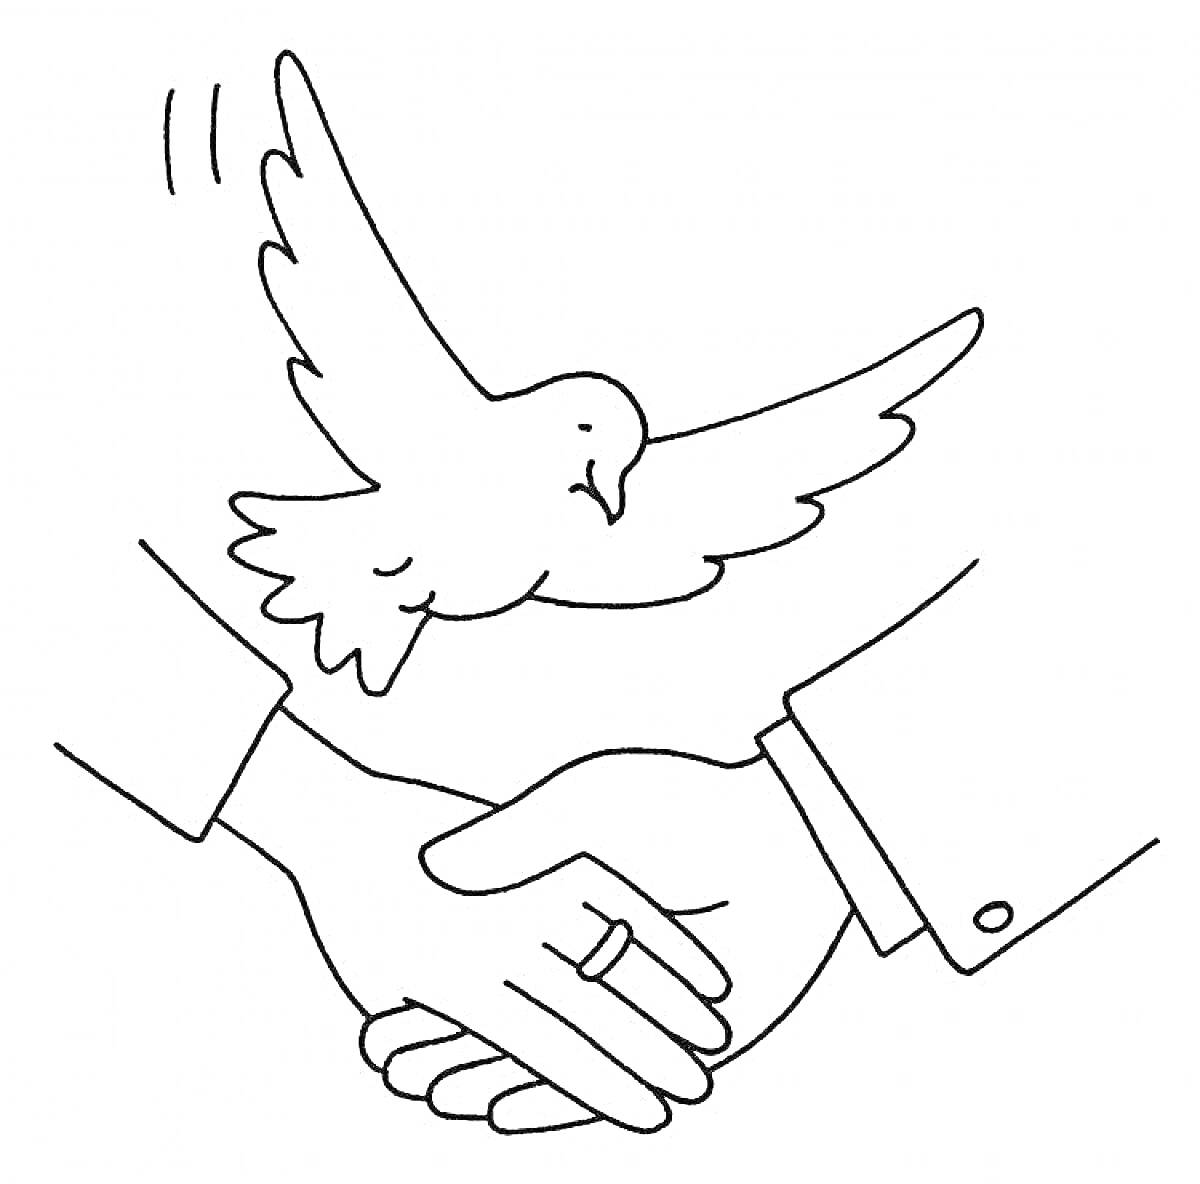 Раскраска Рукопожатие двух людей и летящая голубь